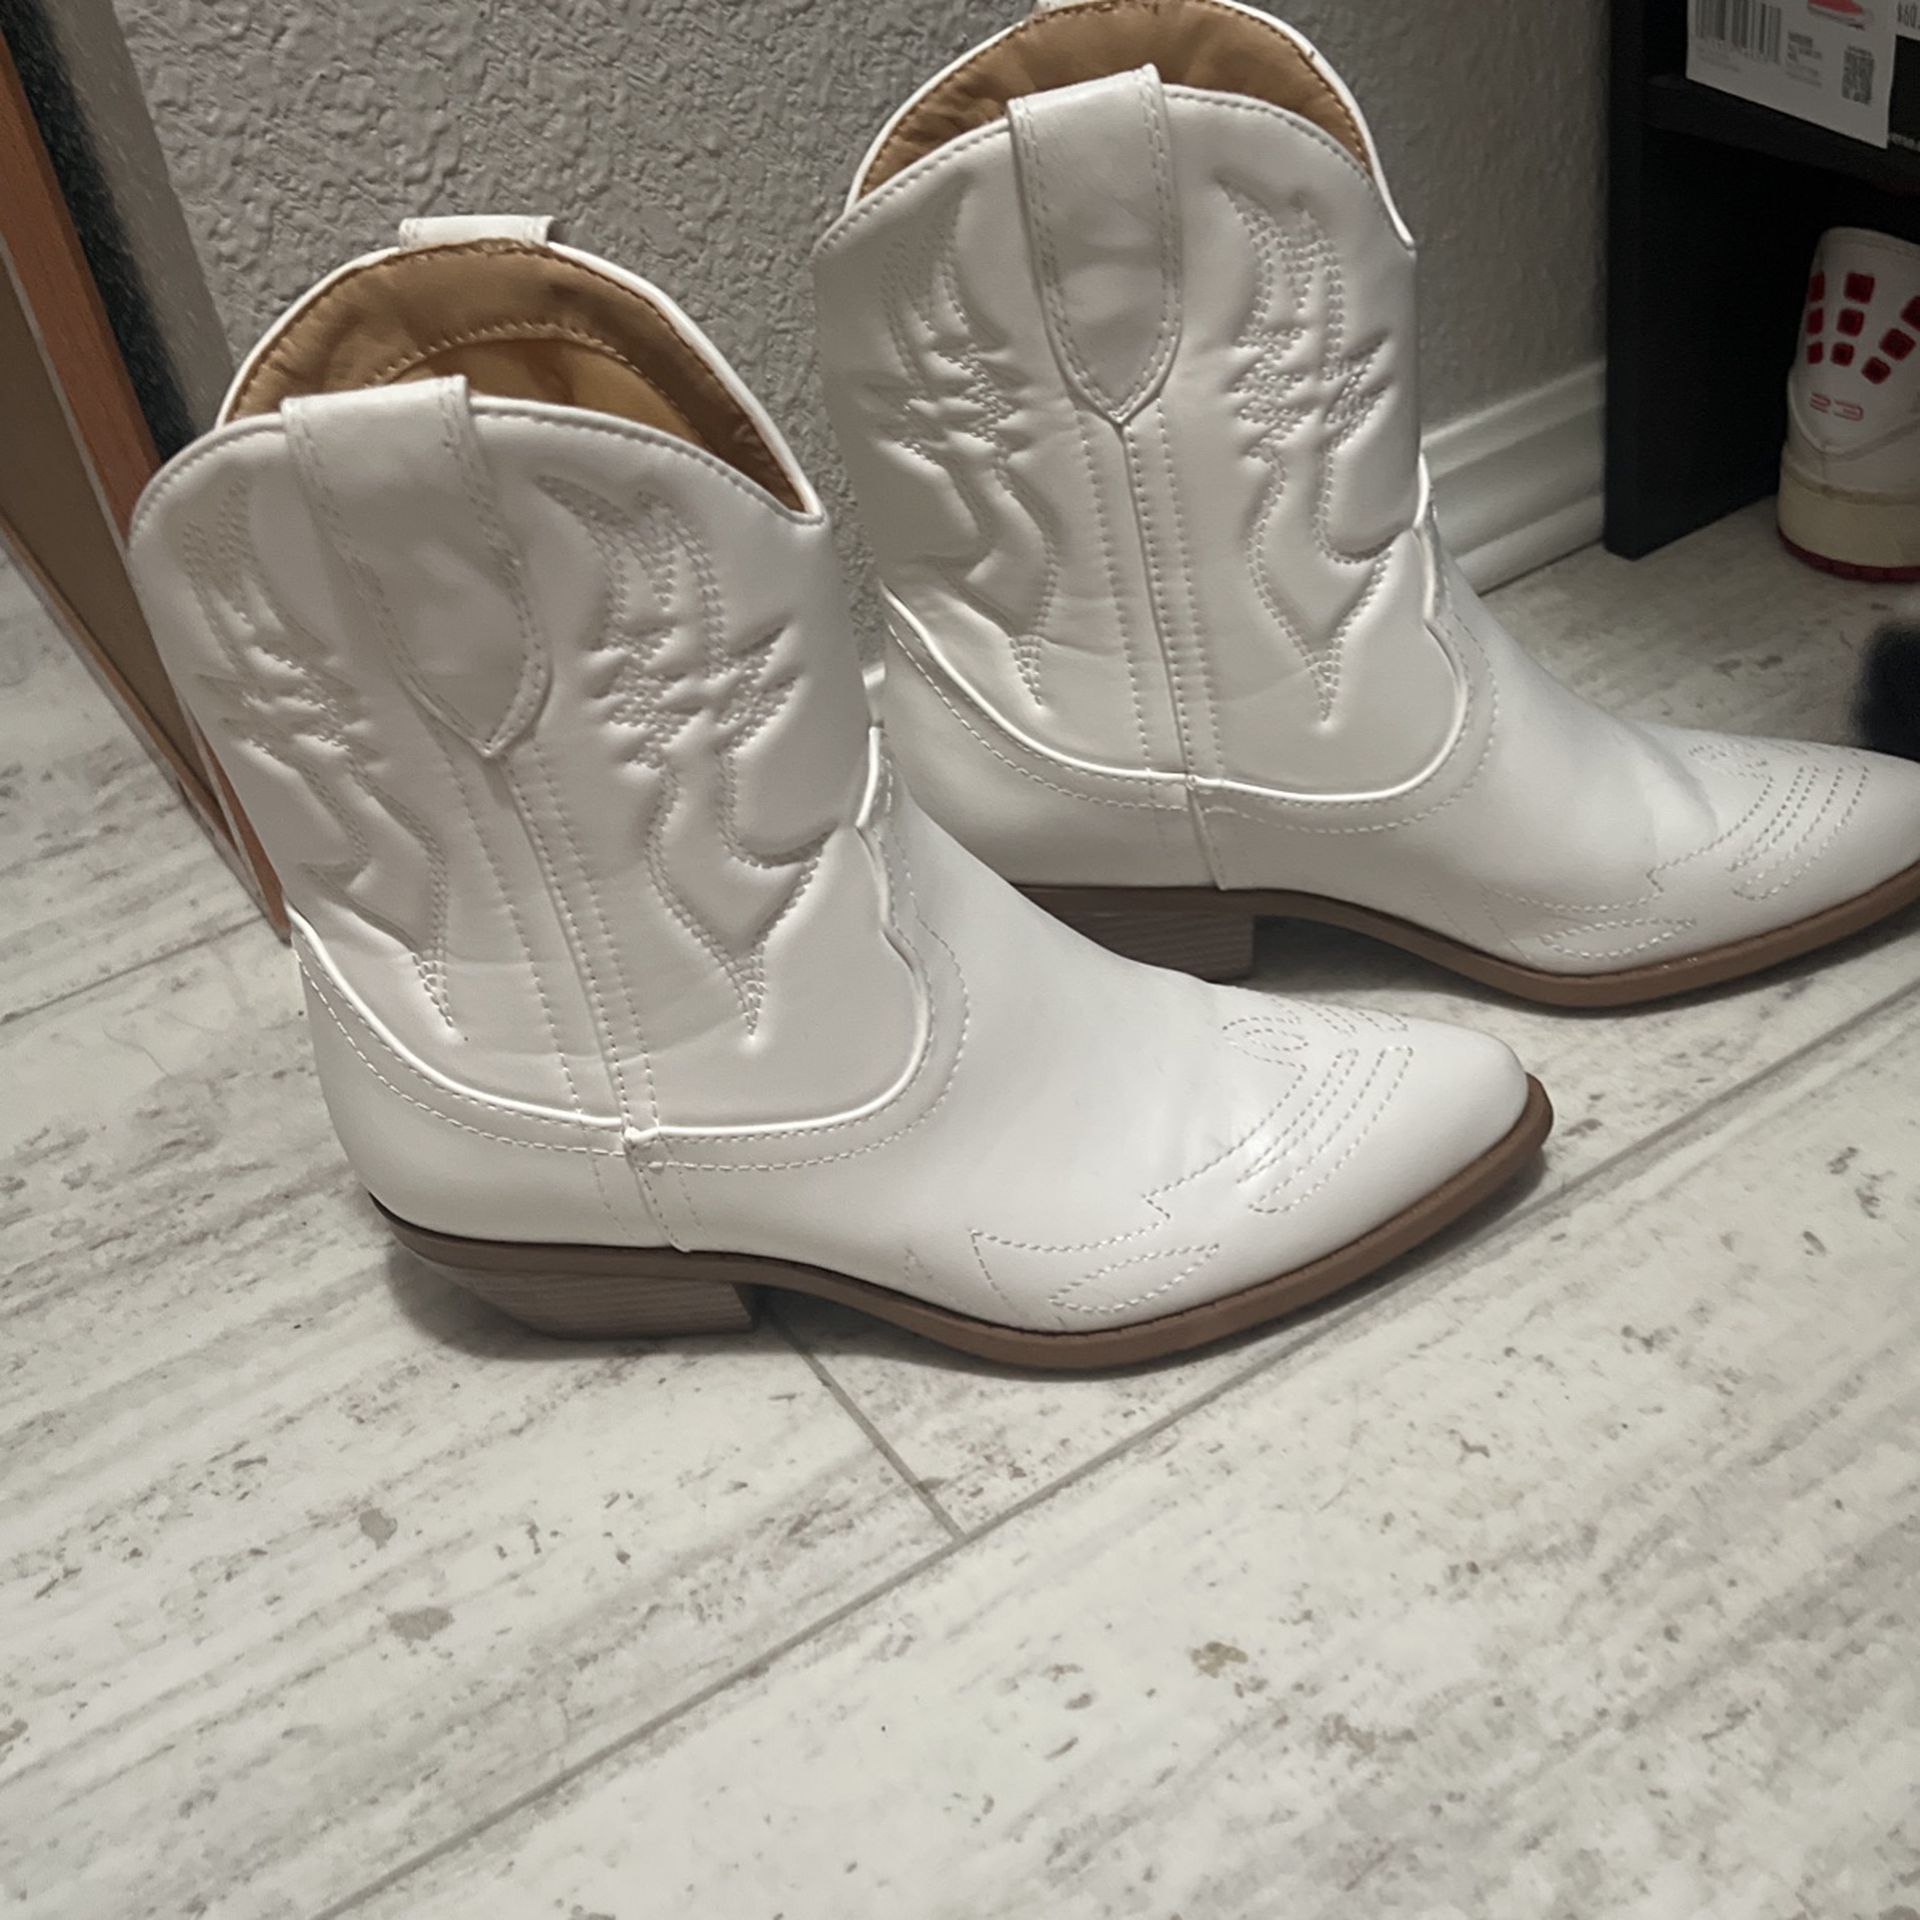 Western Women’s Boots